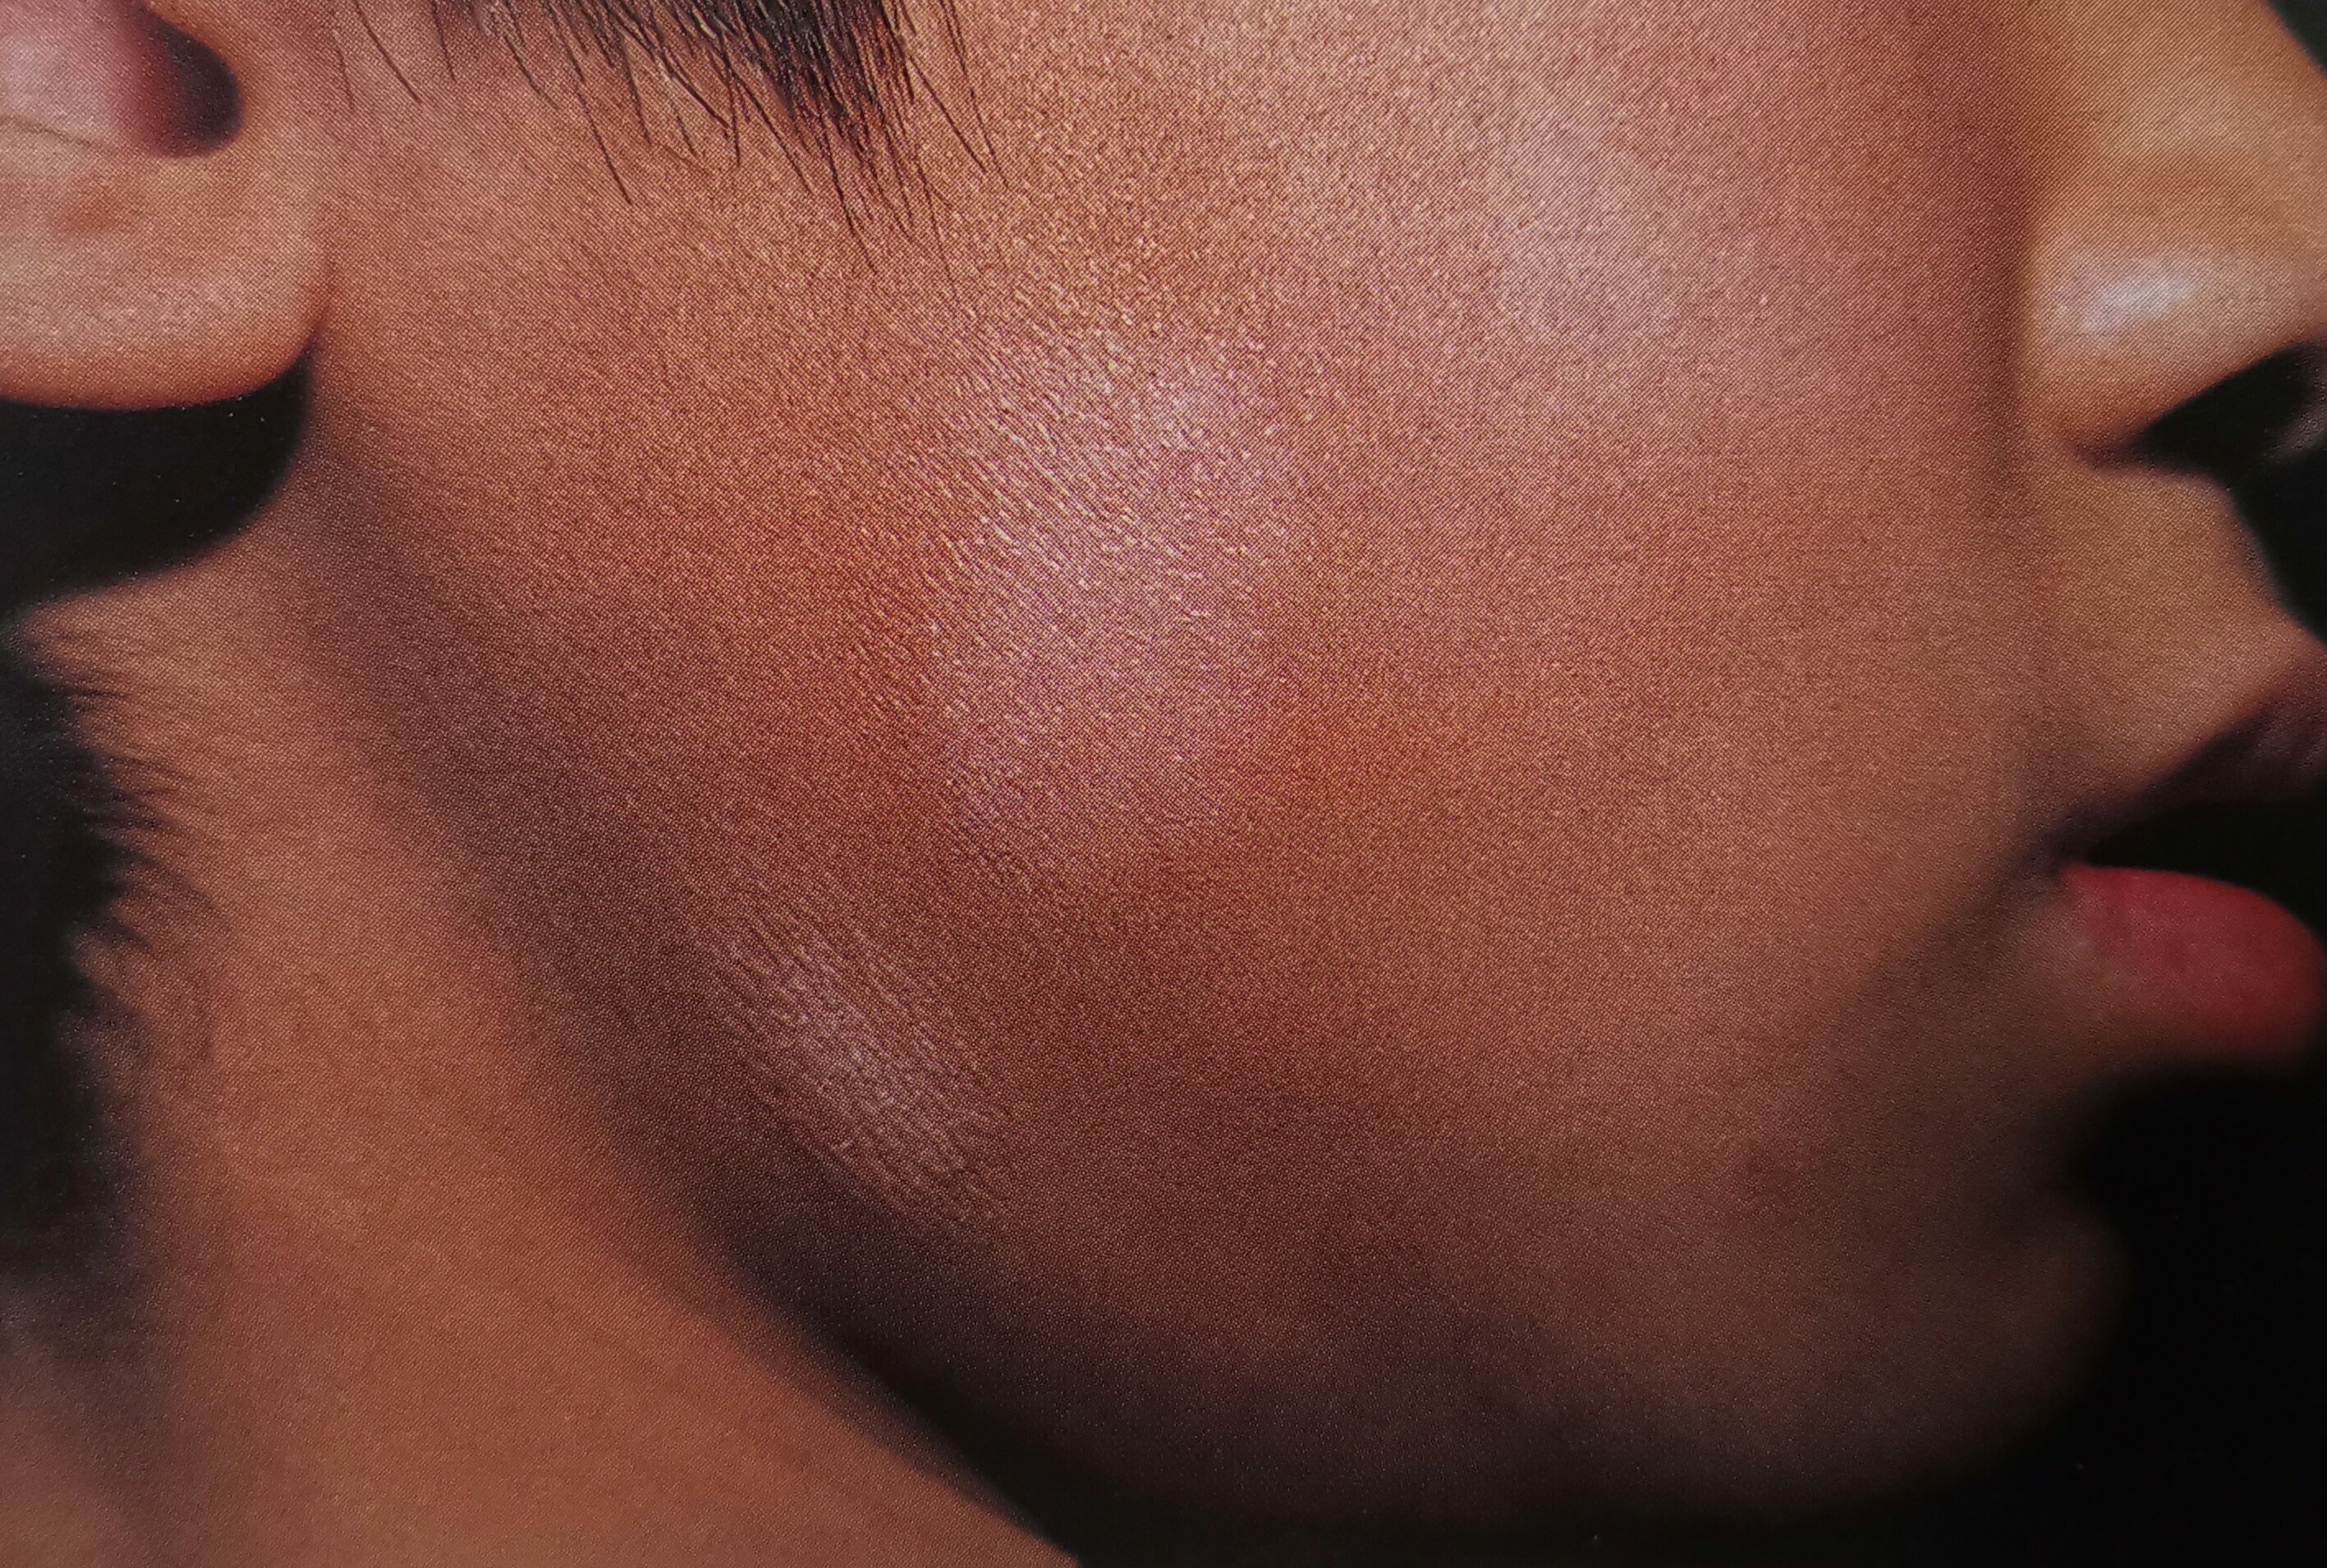 白色糠疹,又名单纯糠疹,俗称"虫斑,是以干性细薄糠状鳞屑性色素减退